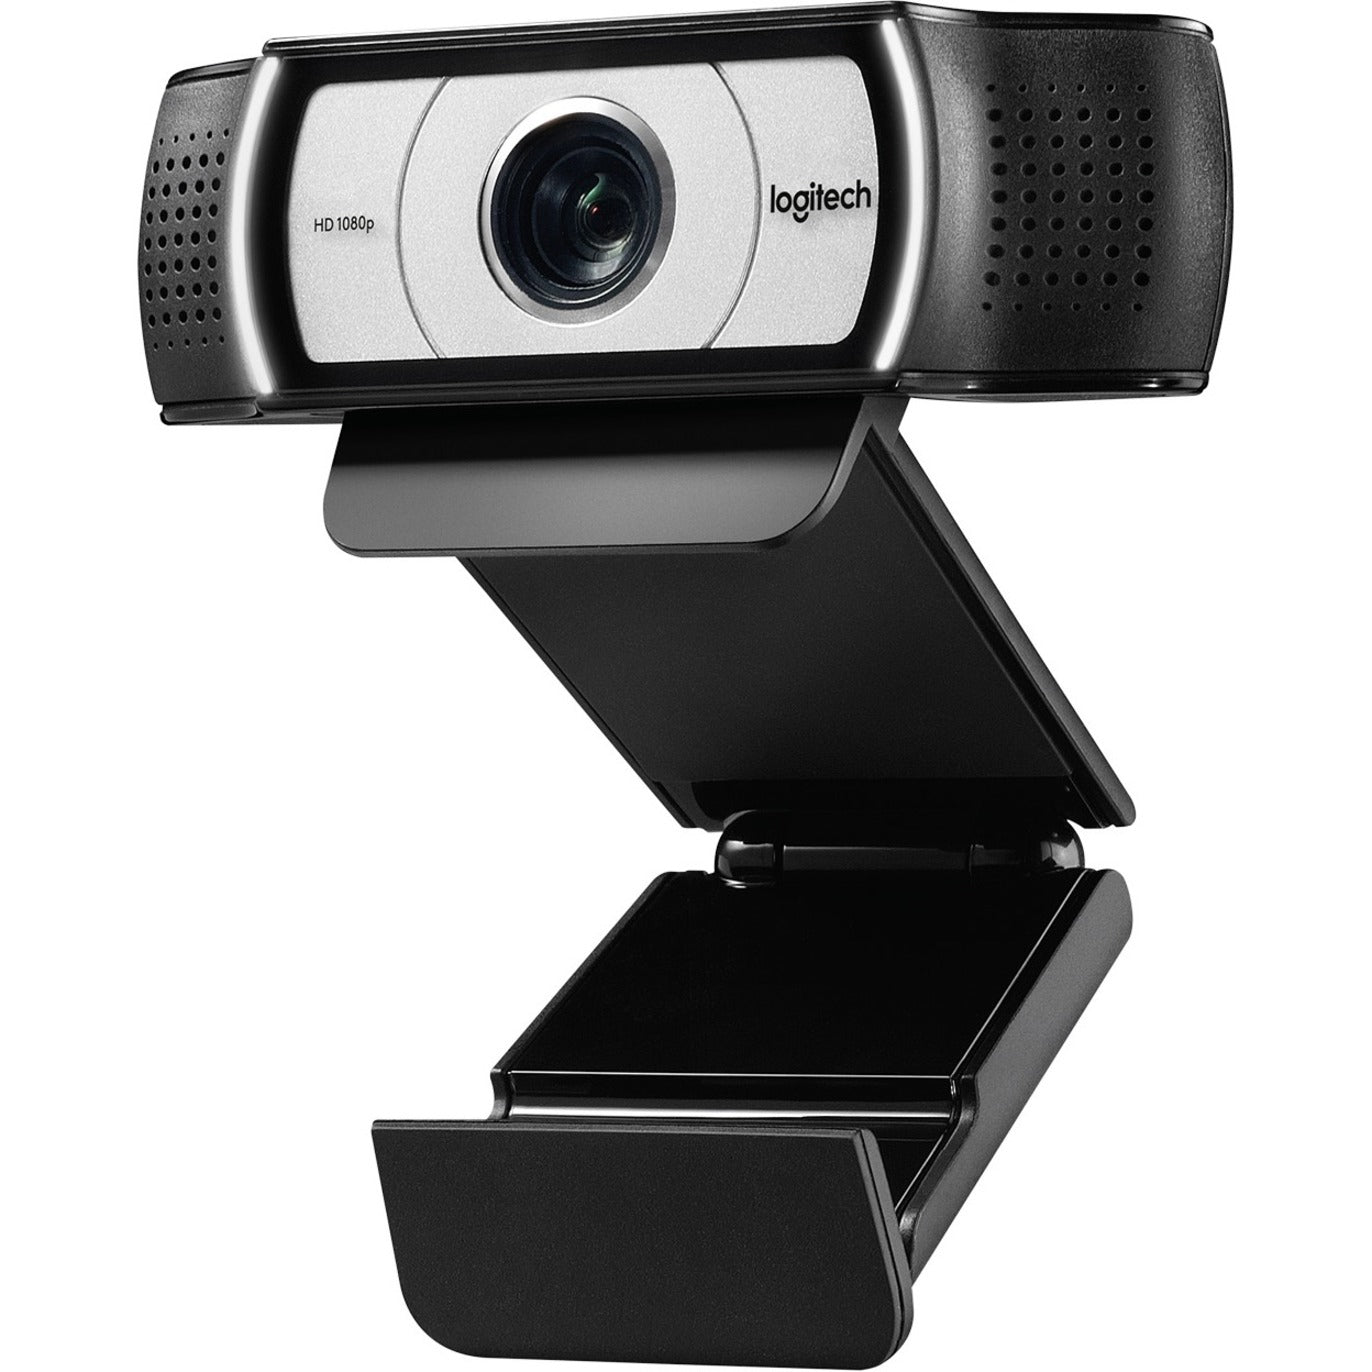 Logitech 960-000971 Webcam C930e, 30 fps, USB 2.0, 1080p Video Calling